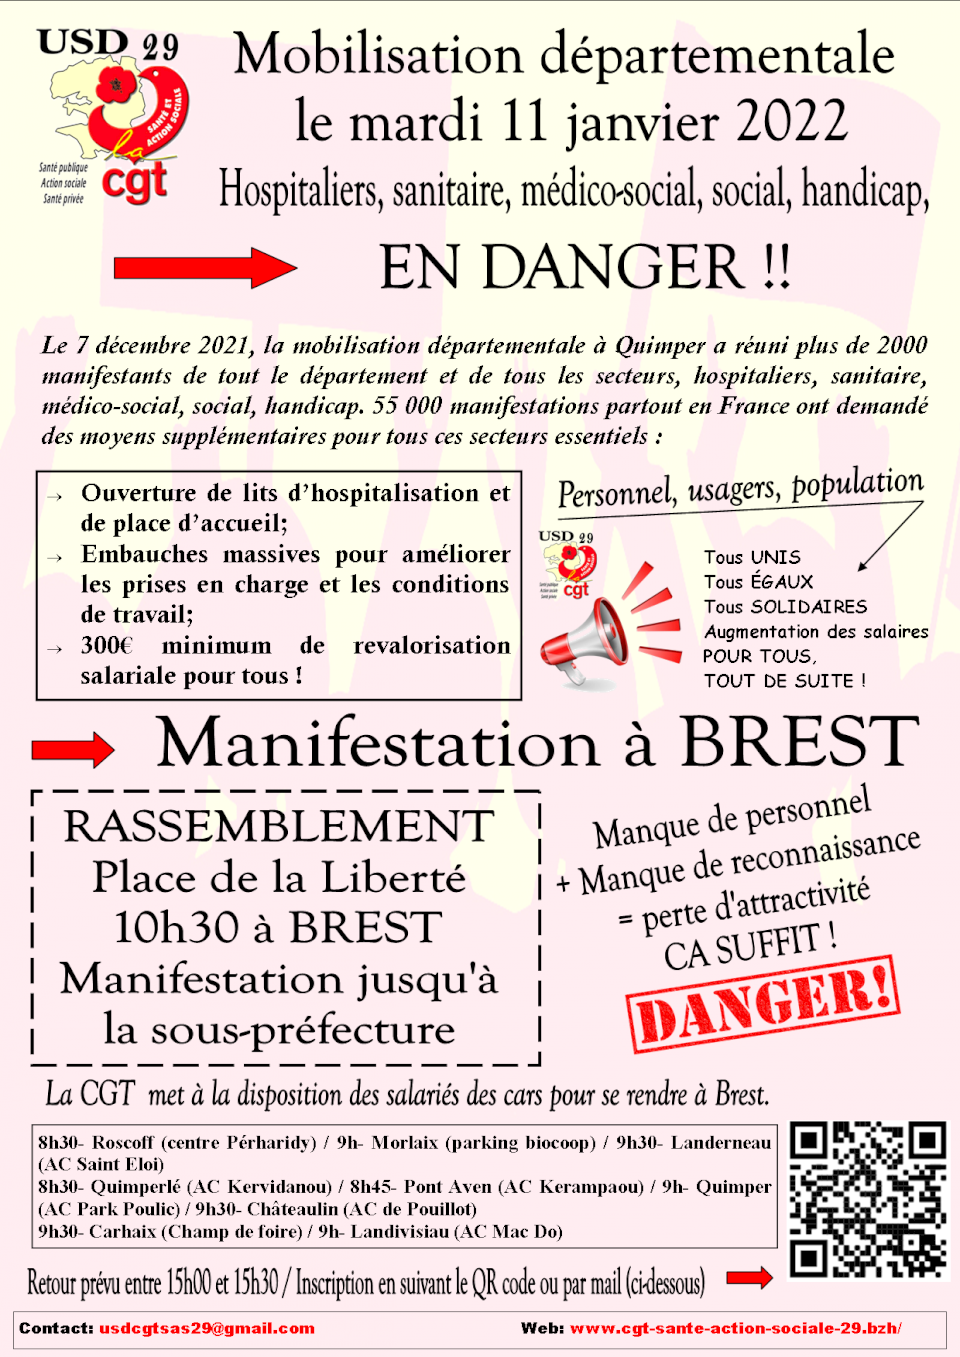 11 janvier 2022 : Manifestation départementale Santé / Action Sociale Brest 